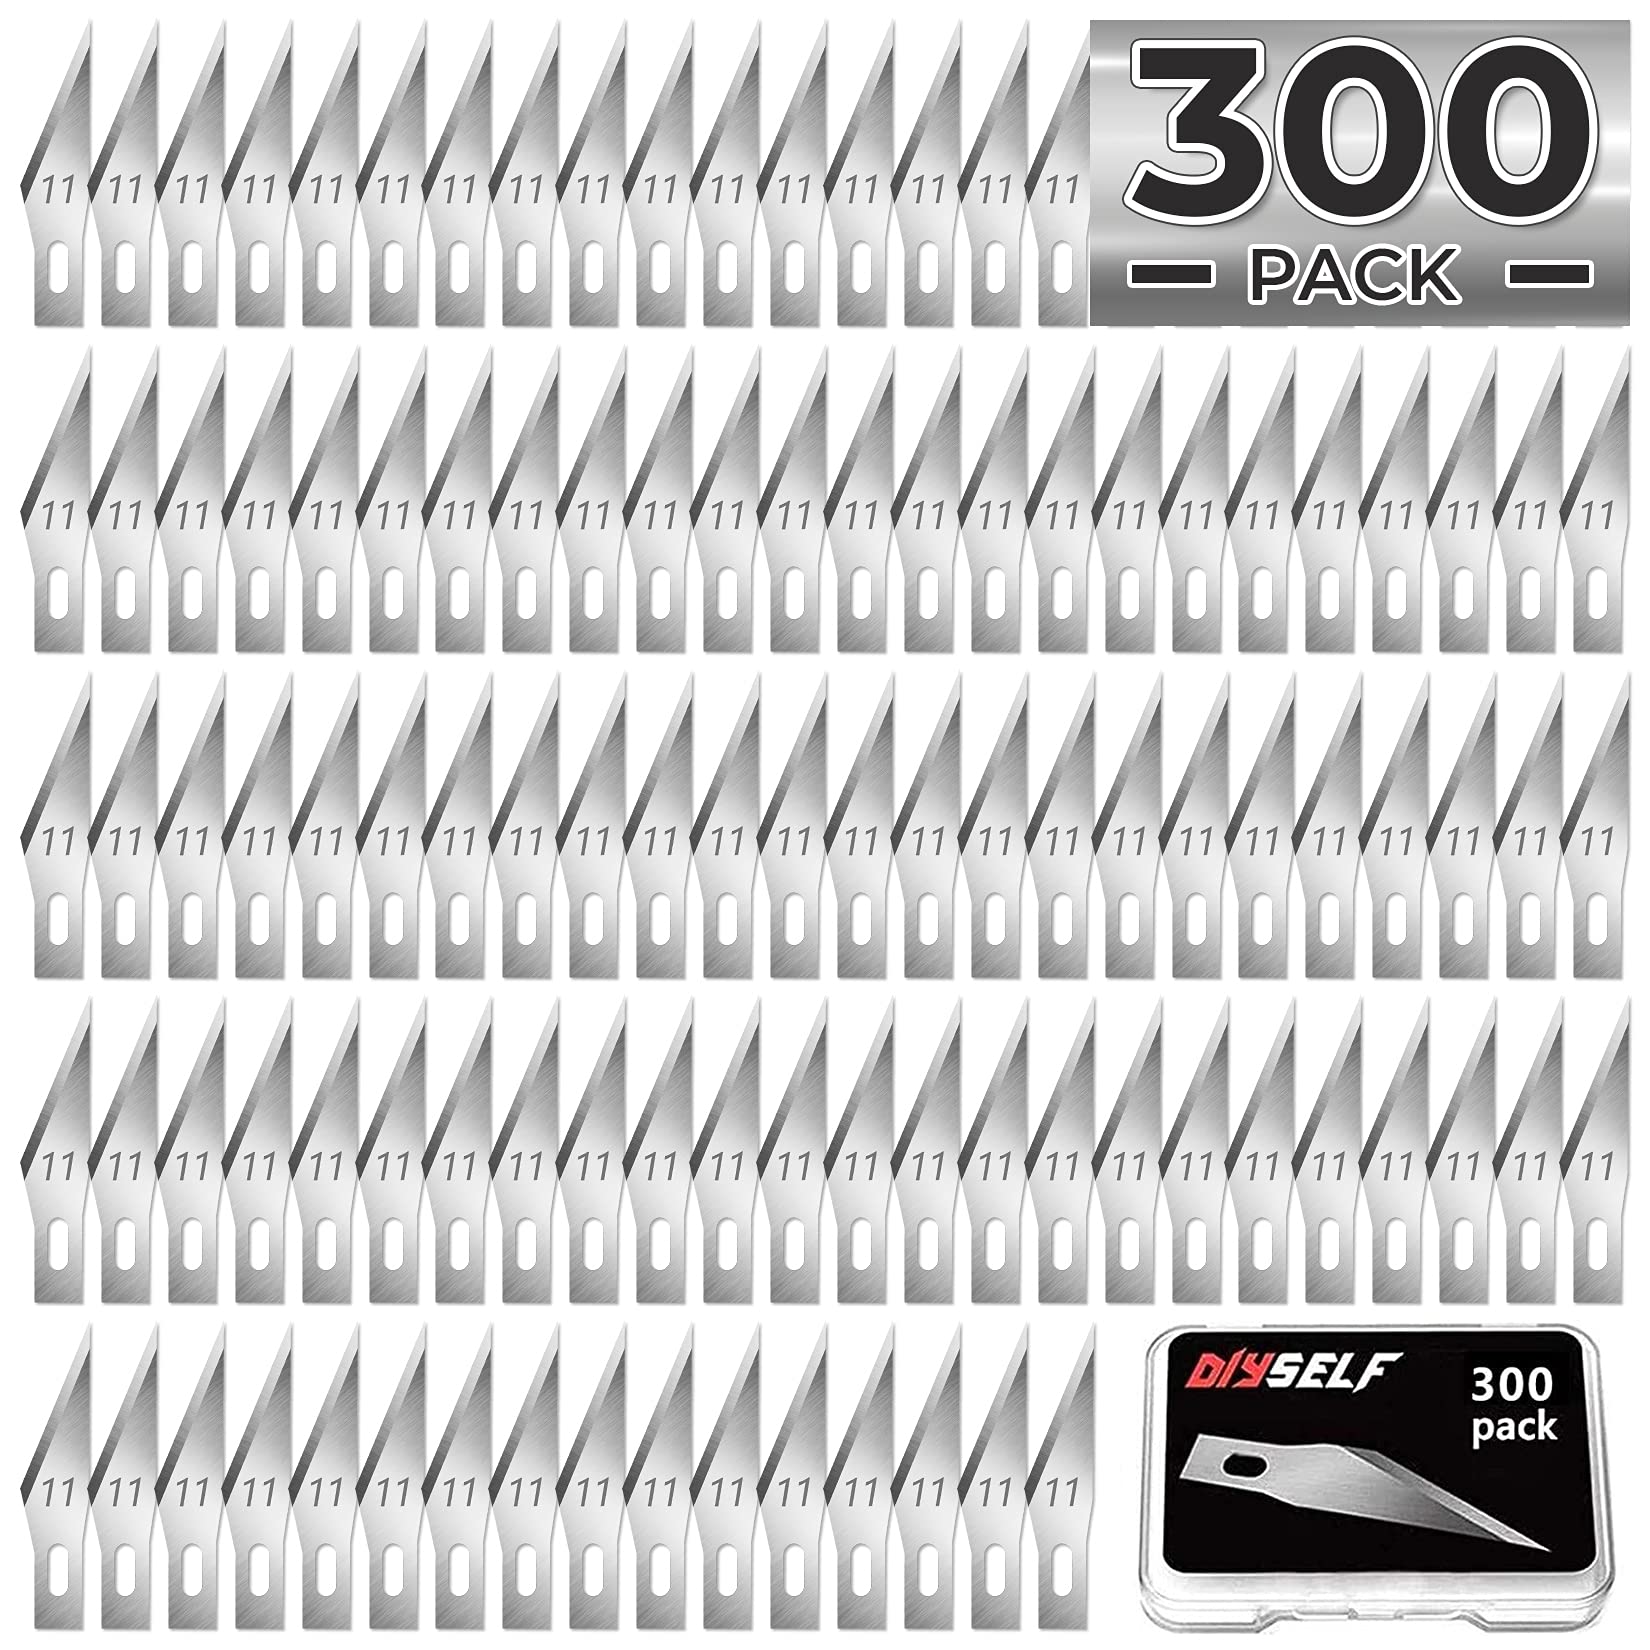 DIYSELF 20 Pack Exacto Knife - Craft Knife - Hobby Knife - Precision Knife  - Exactly Knife - Art Knife - Crafting Knife - Exactly Knife (Black)